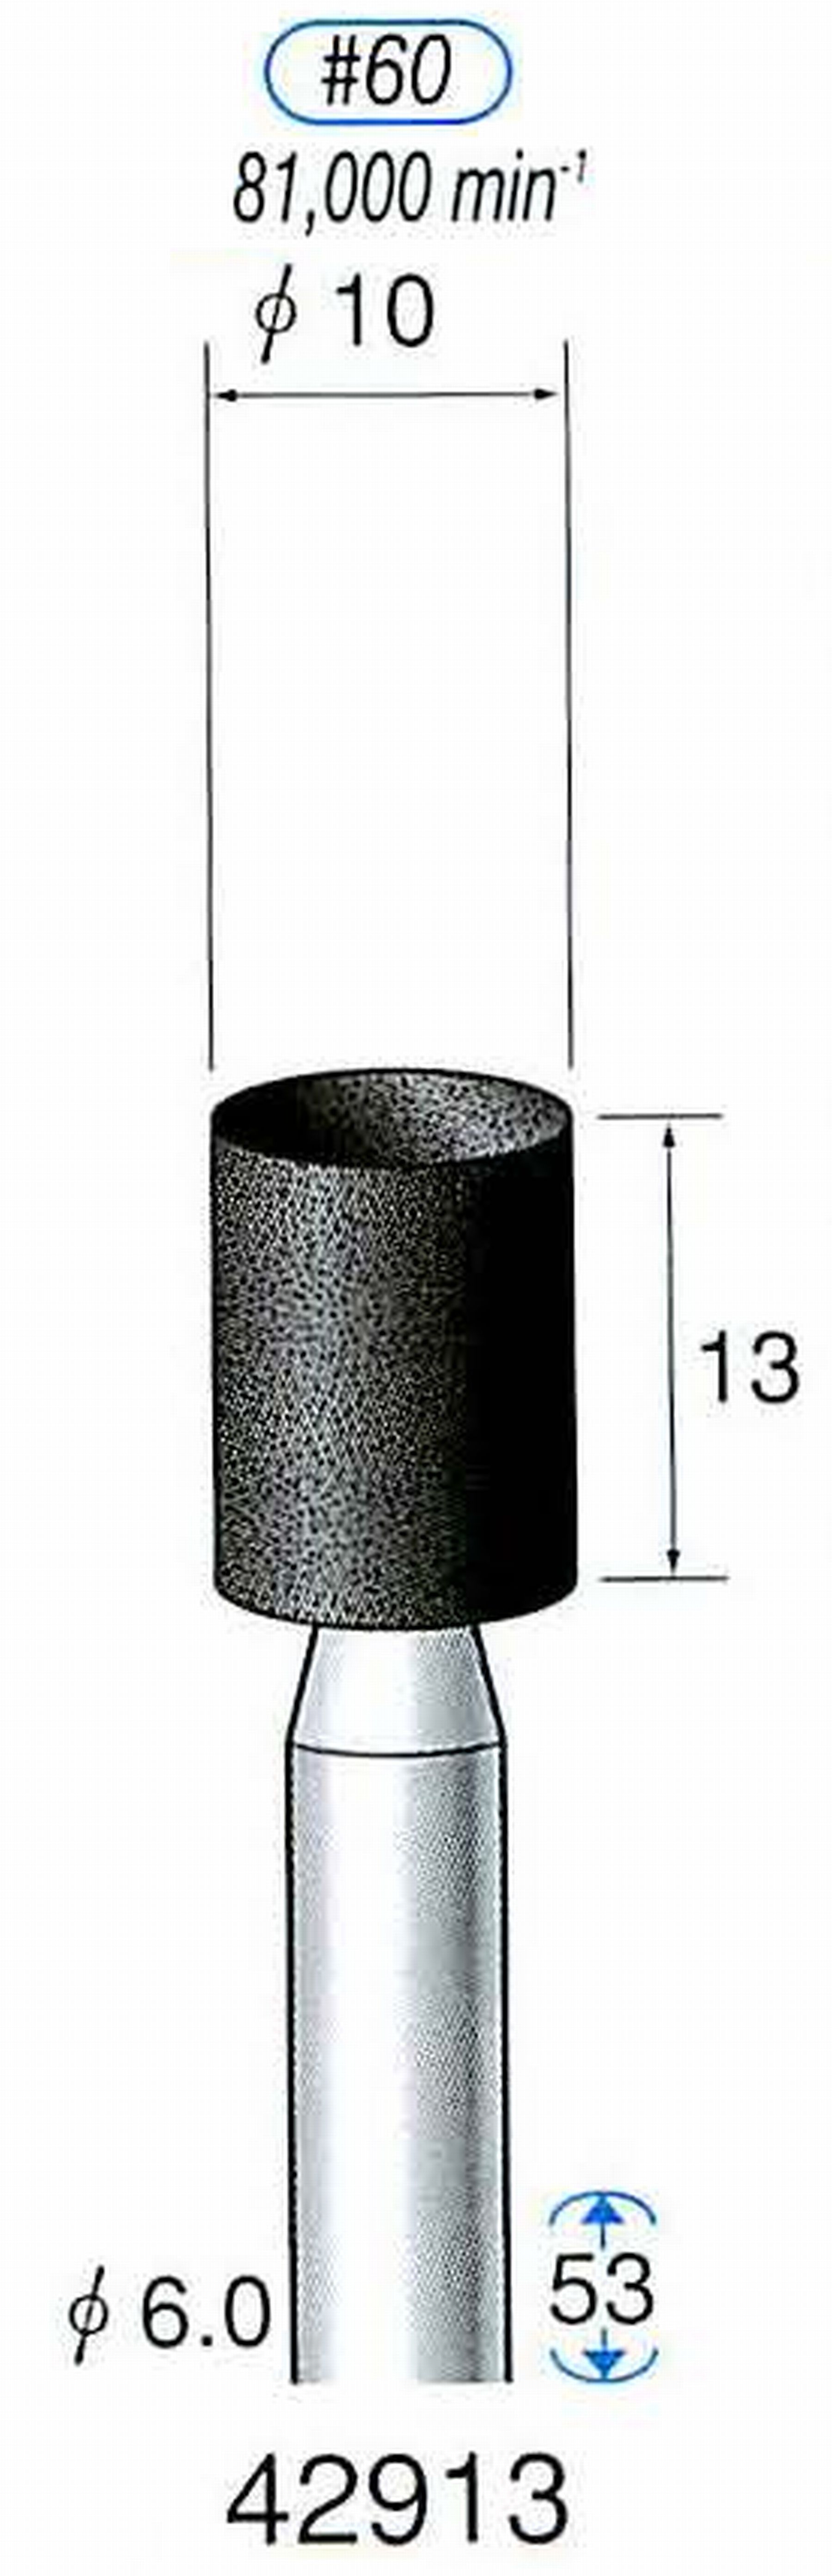 ナカニシ/NAKANISHI 軸付砥石(A砥粒) ブラック砥石 軸径(シャンク) φ6.0mm 42913